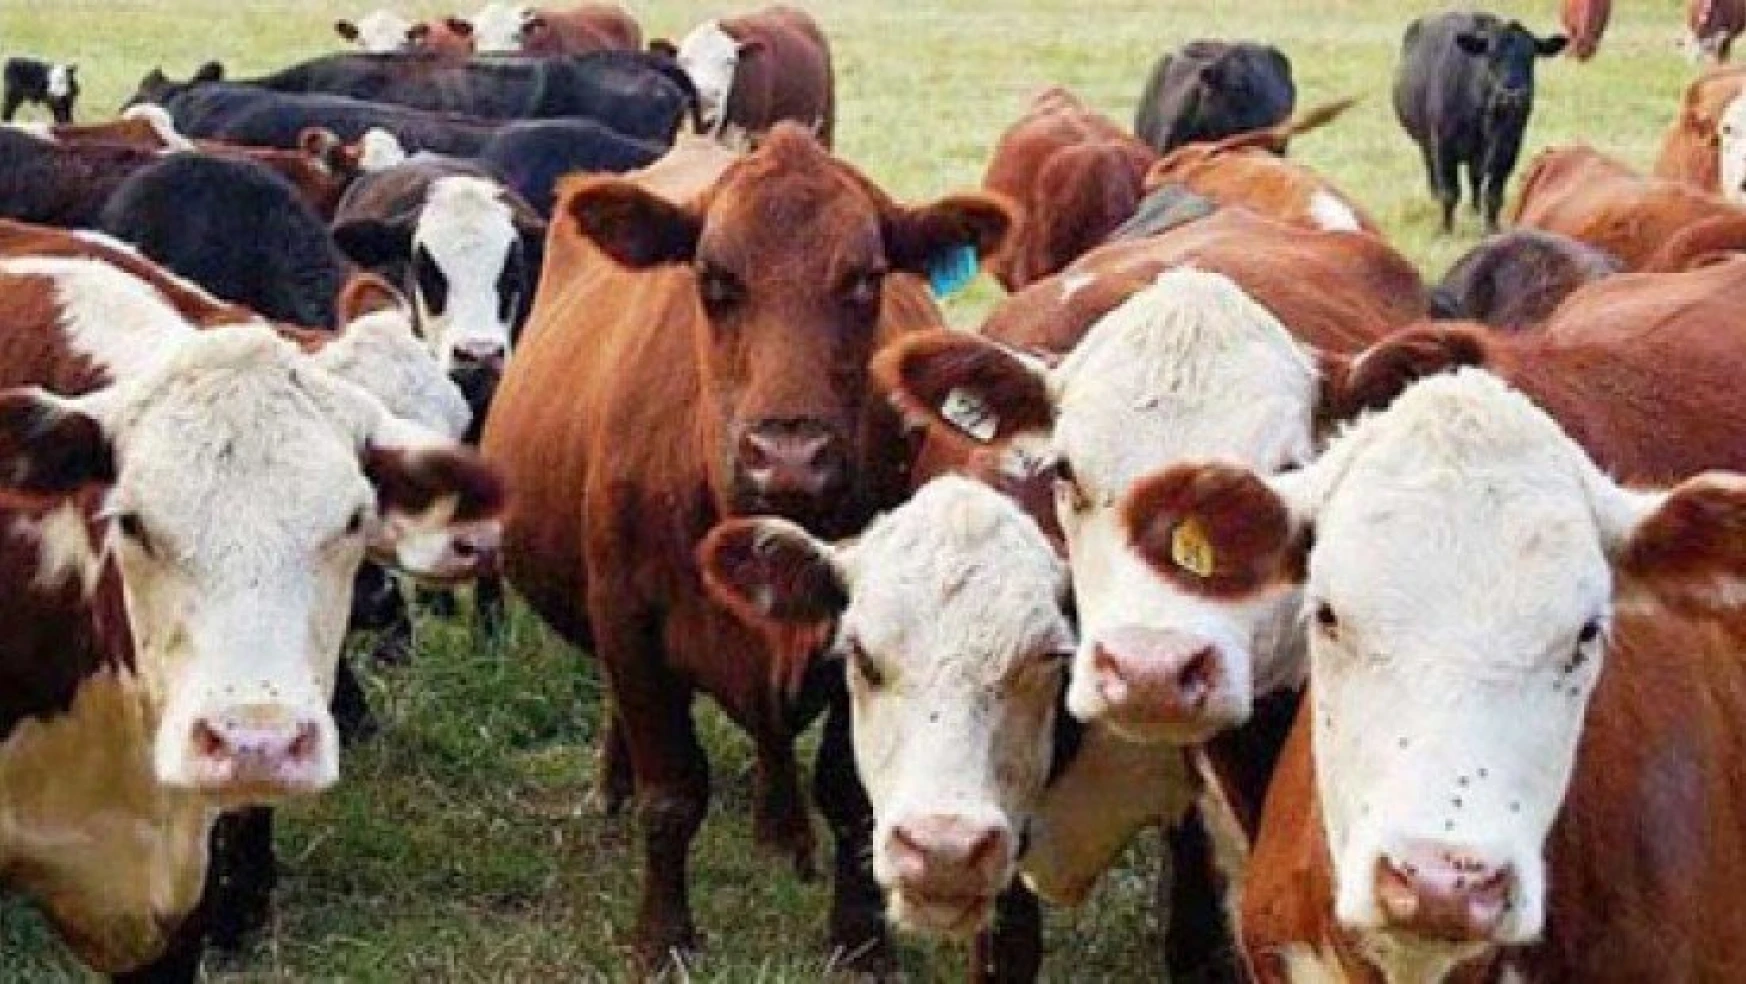 Ülkemizde canlı hayvanlardan sığır (kültür) fiyatı bir önceki yıla göre yüzde 18,46 arttı.